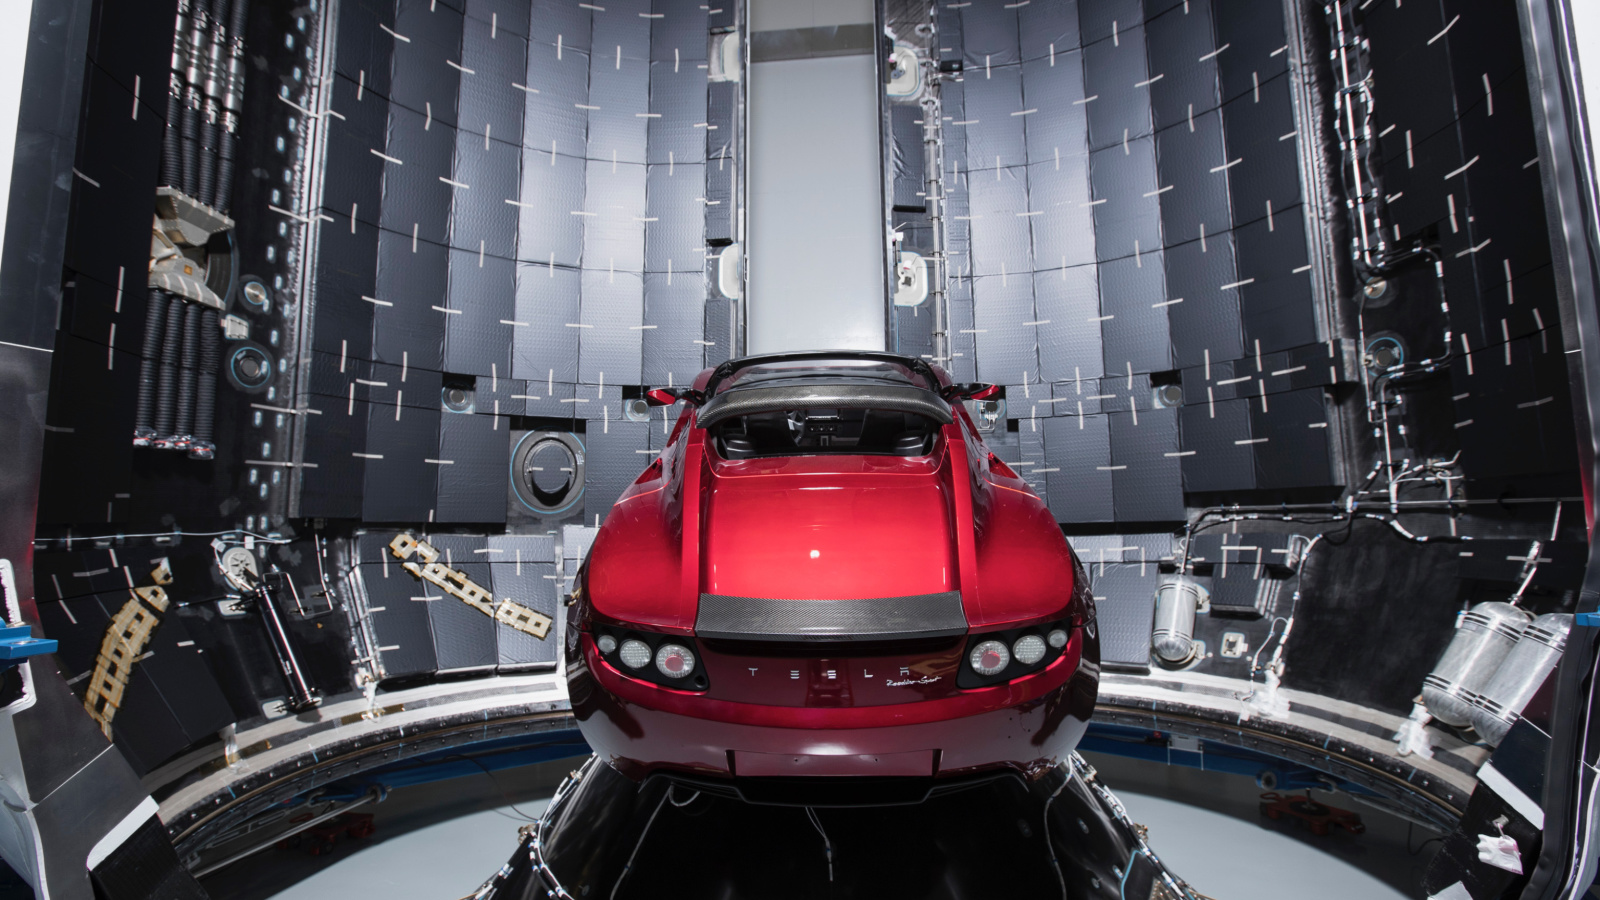 SpaceX Starman Tesla Roadster wallpaper 1600x900